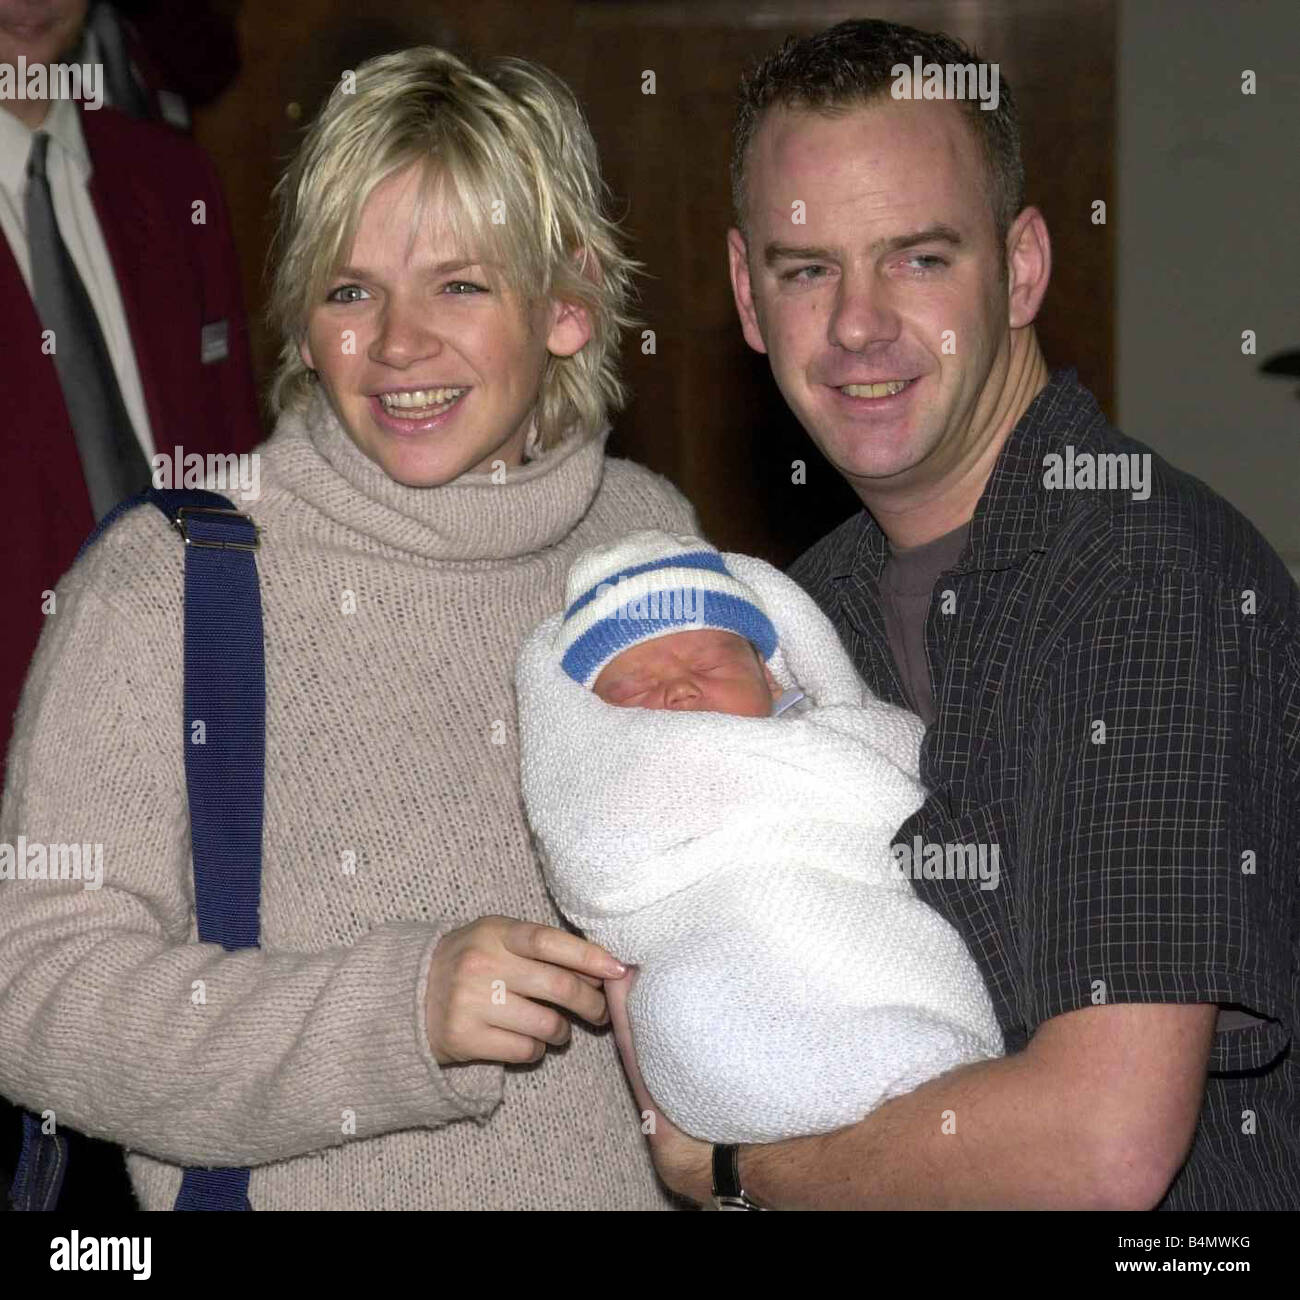 Presentador de televisión y DJ Zoe Ball de diciembre de 2000 dejando el hospital de Portland con new born baby boy Woody y escoltar a su marido fue Norman Cook Aka Fat Boy Slim Foto de stock